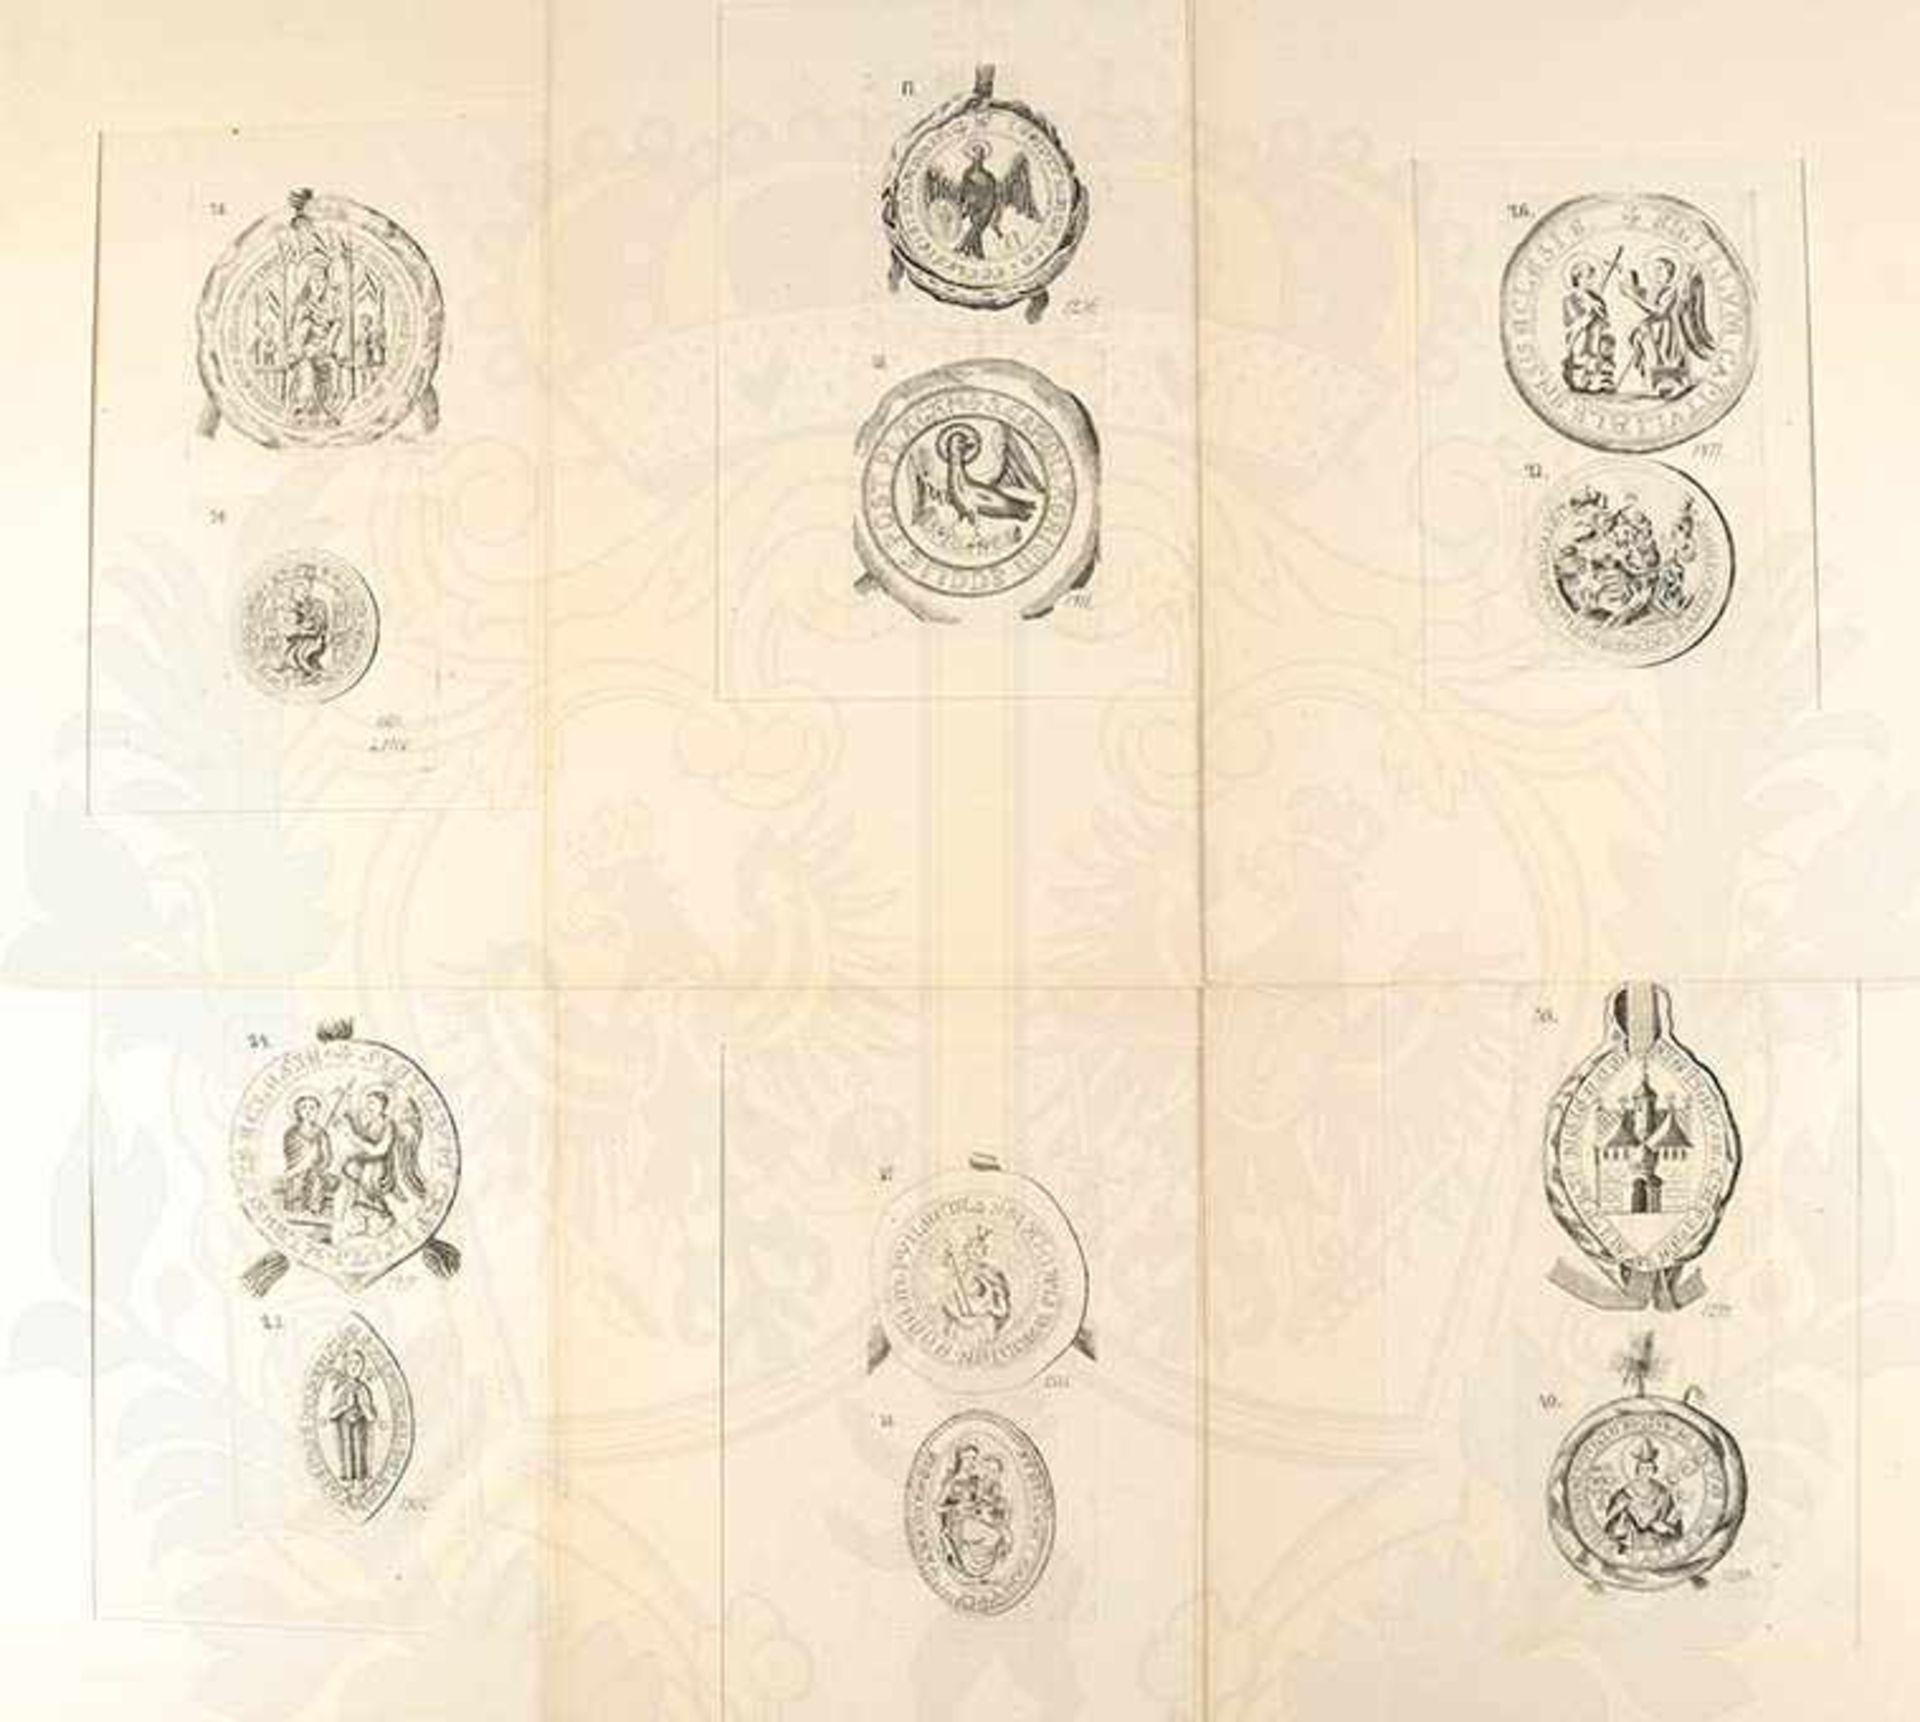 SAMMLUNG 43 STAHLSTICHE, kleinf. Blätter mit Abb. von 1 oder 2 mittelalterlichen Siegeln, um 1850, - Bild 4 aus 4